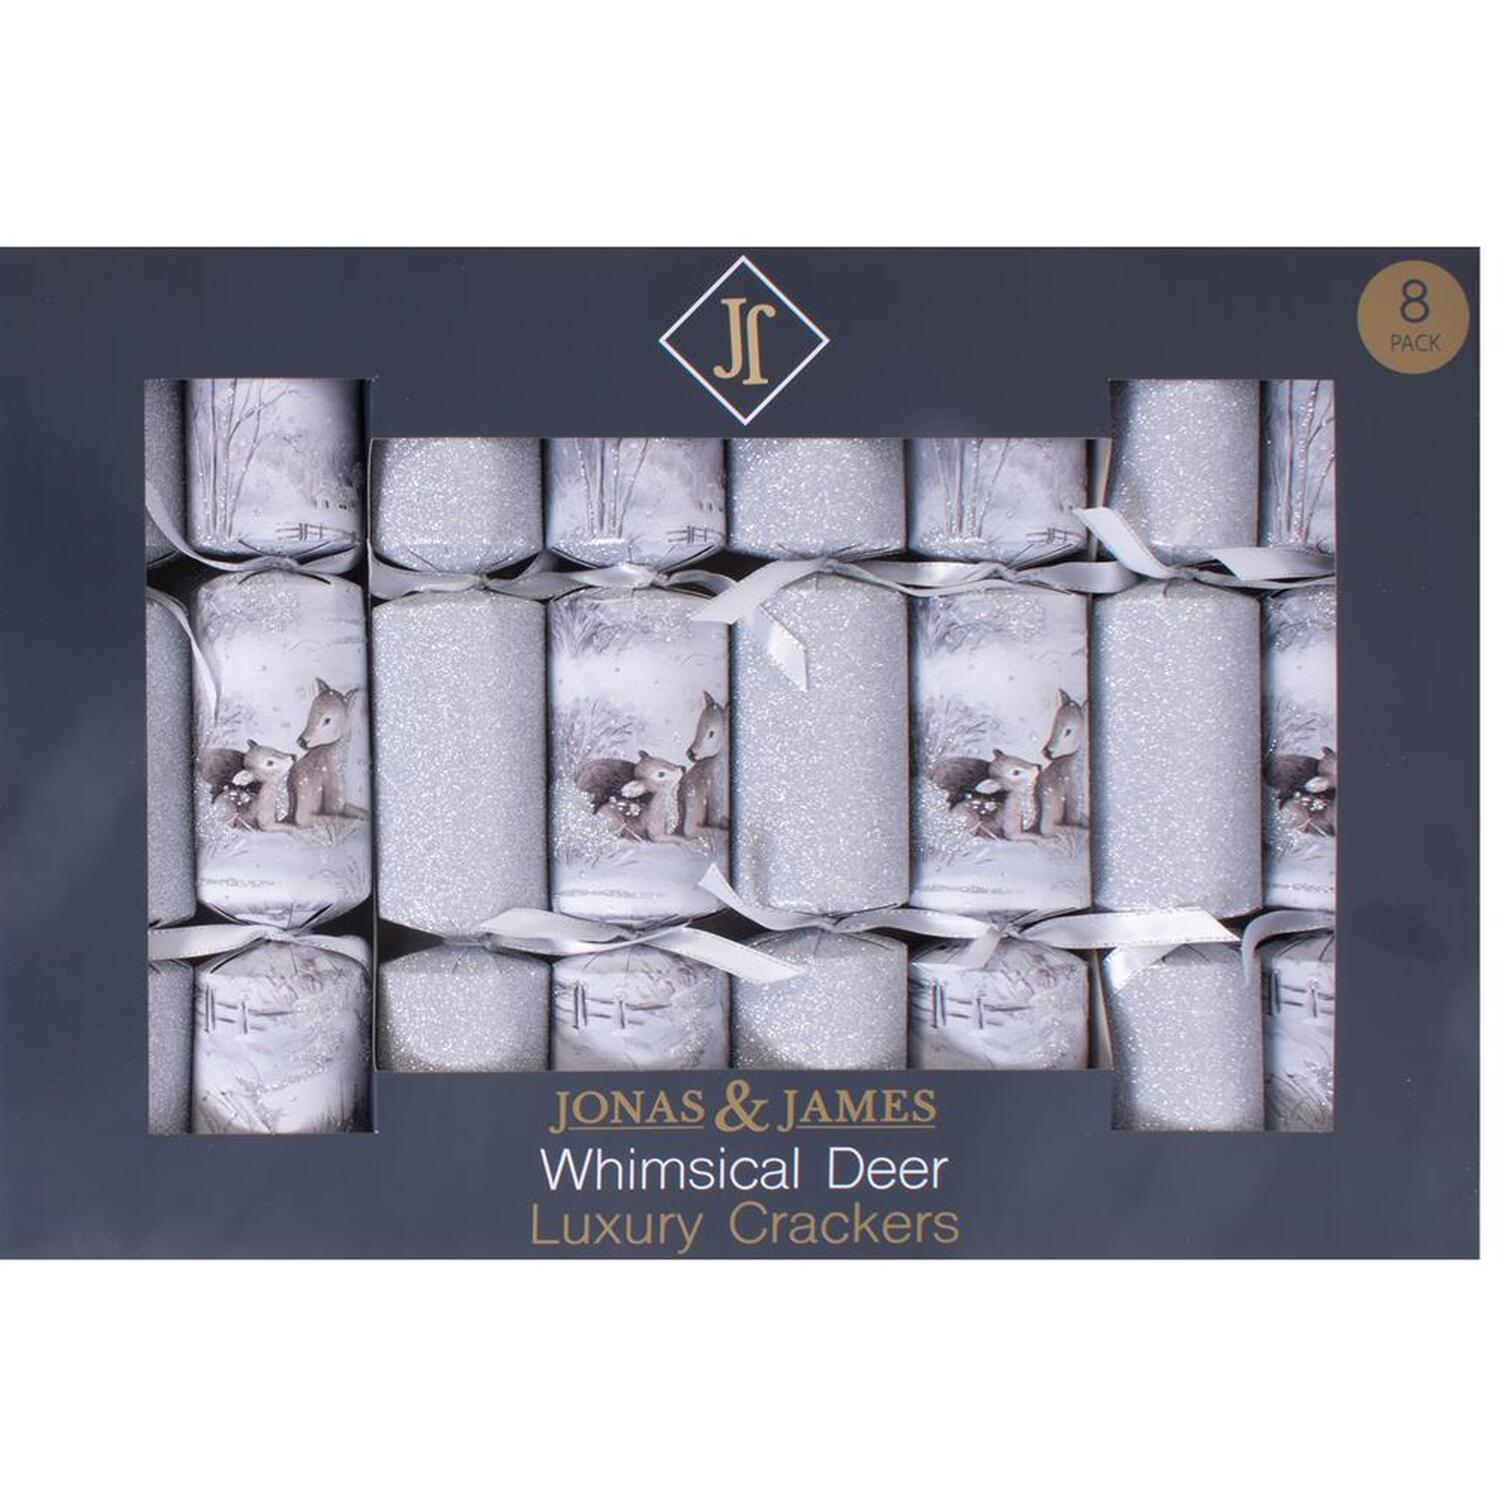 Pack of 8 Whimsical Deer Luxury Crackers Image 1